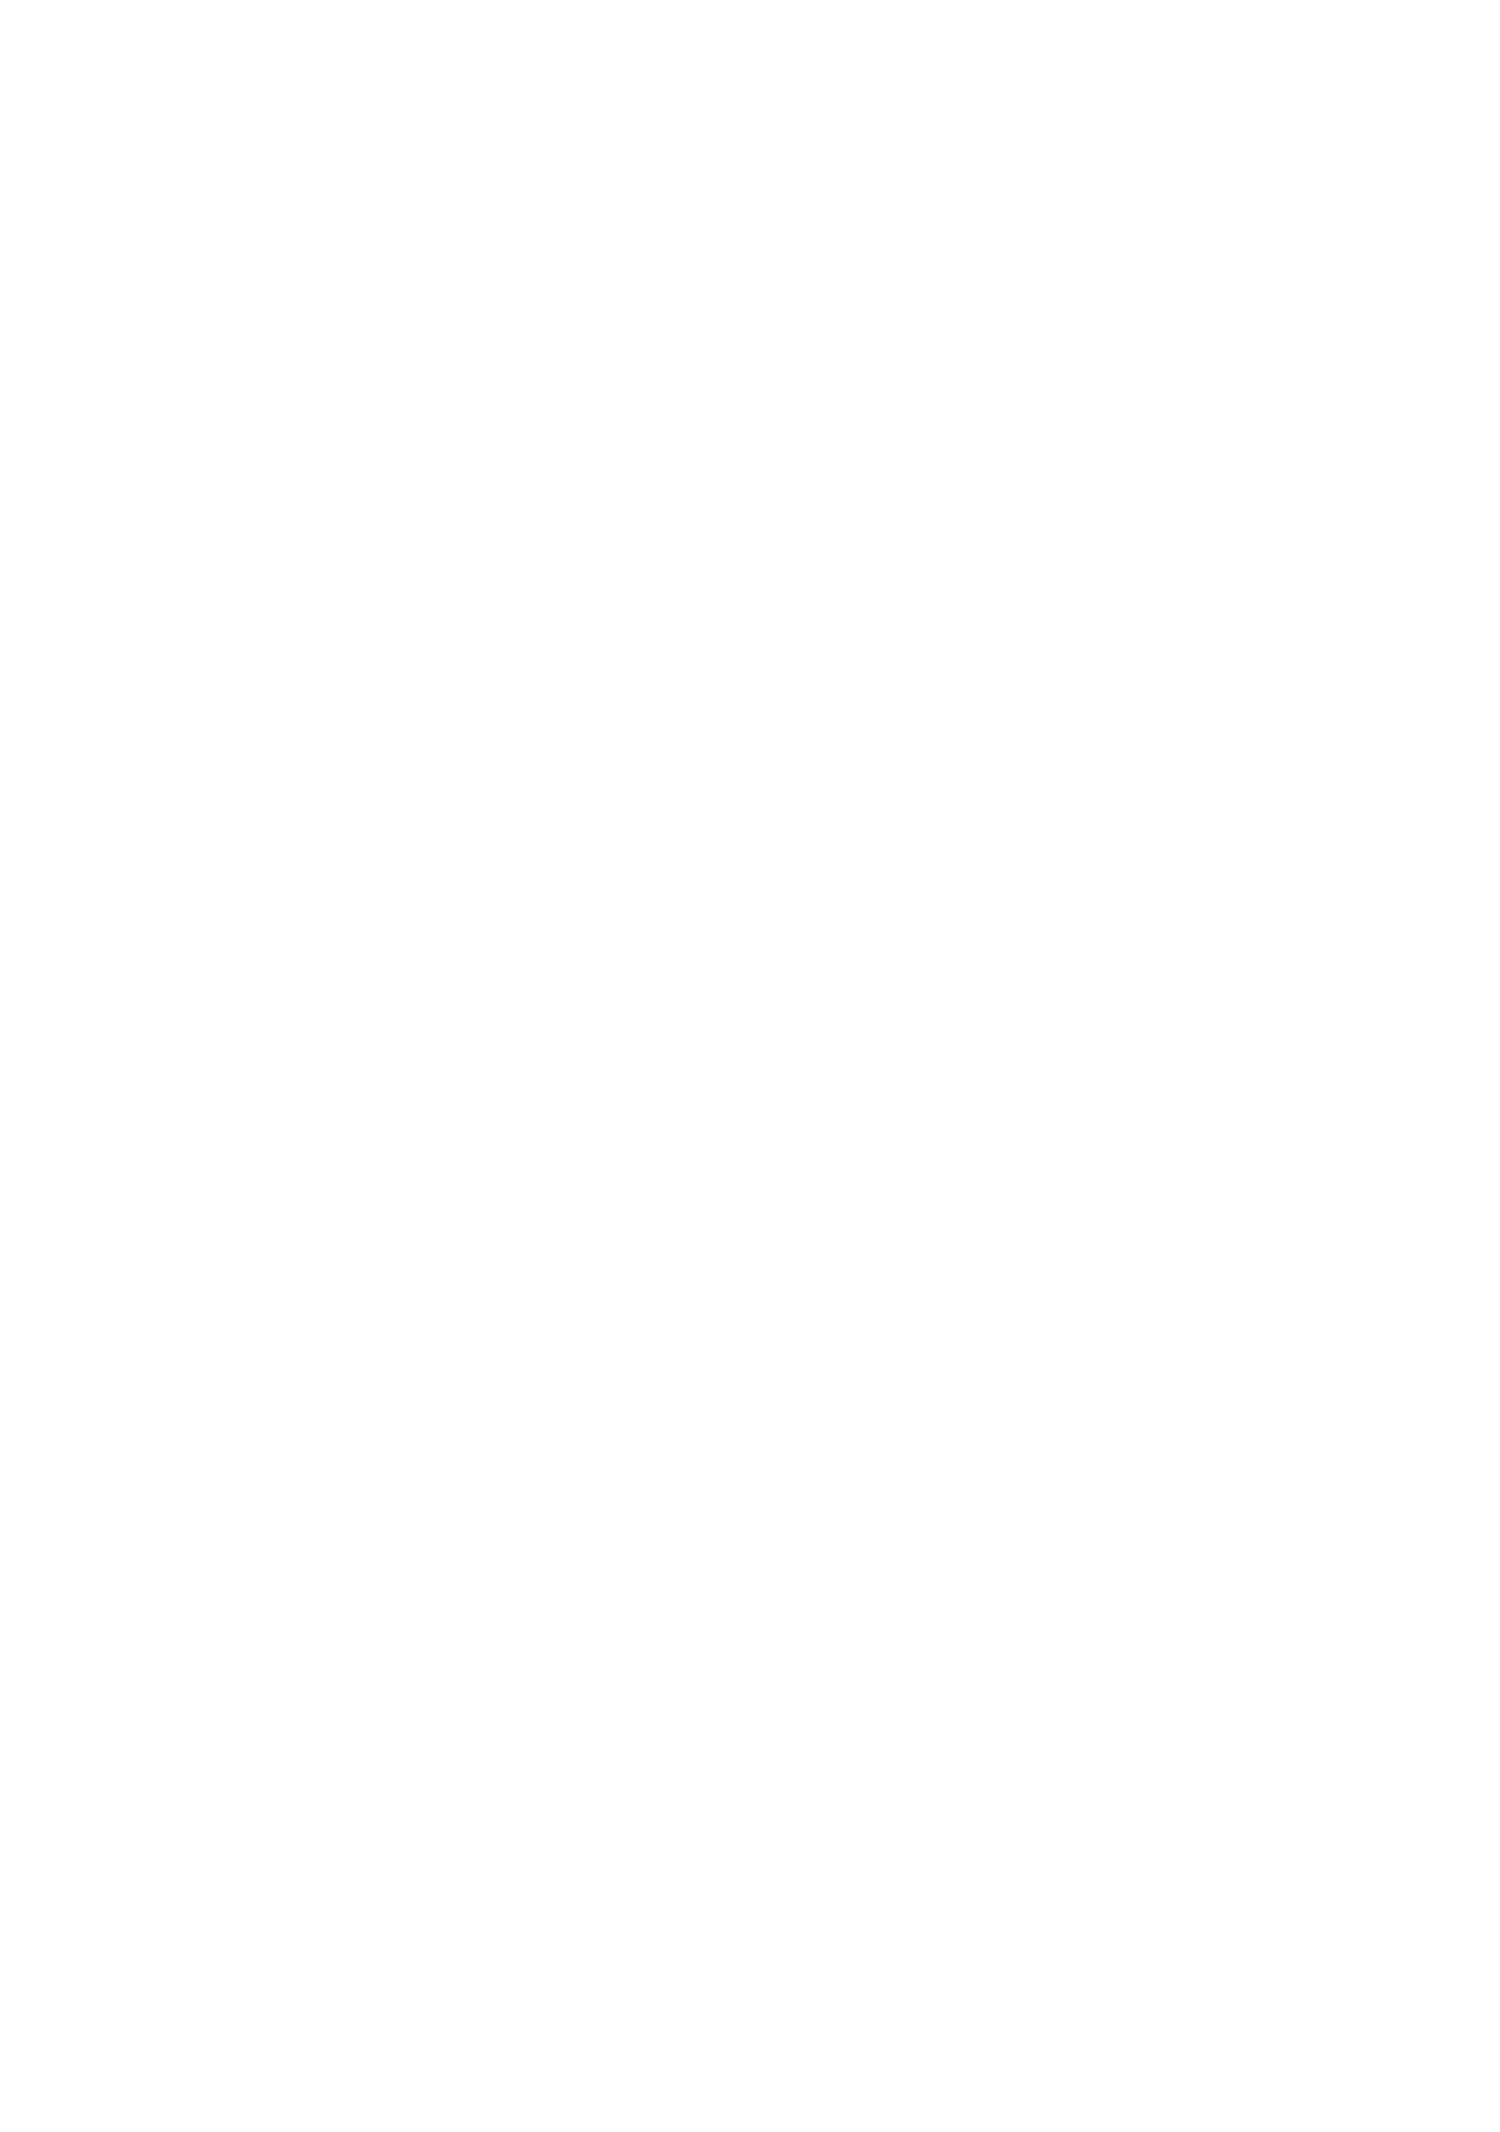 HJB Properties LLC